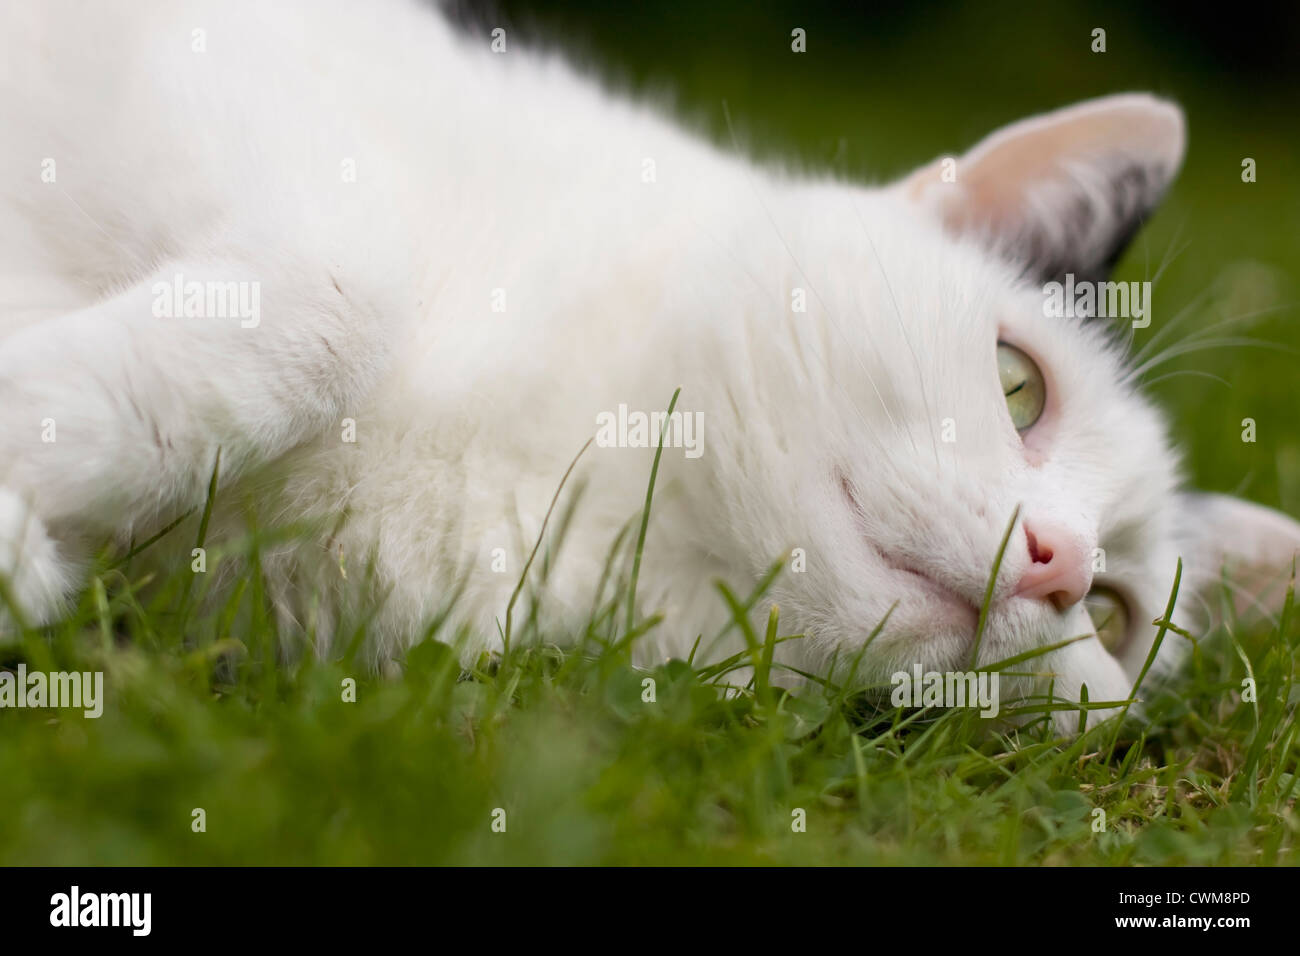 Germania, gatto bianco giacente su erba, close up Foto Stock